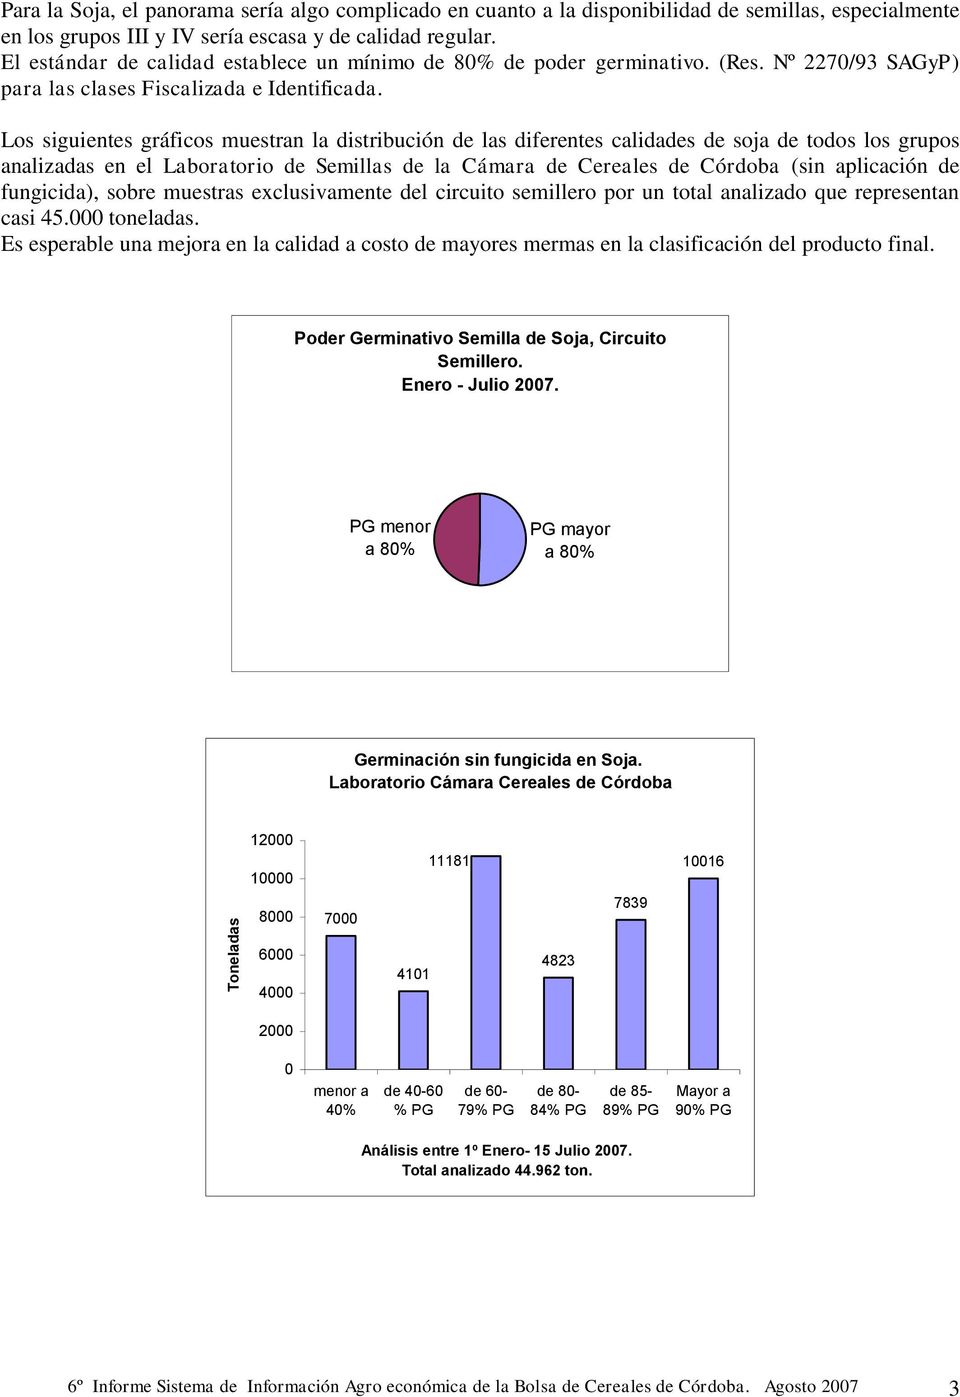 Los siguientes gráficos muestran la distribución de las diferentes calidades de soja de todos los grupos analizadas en el Laboratorio de Semillas de la Cámara de Cereales de Córdoba (sin aplicación